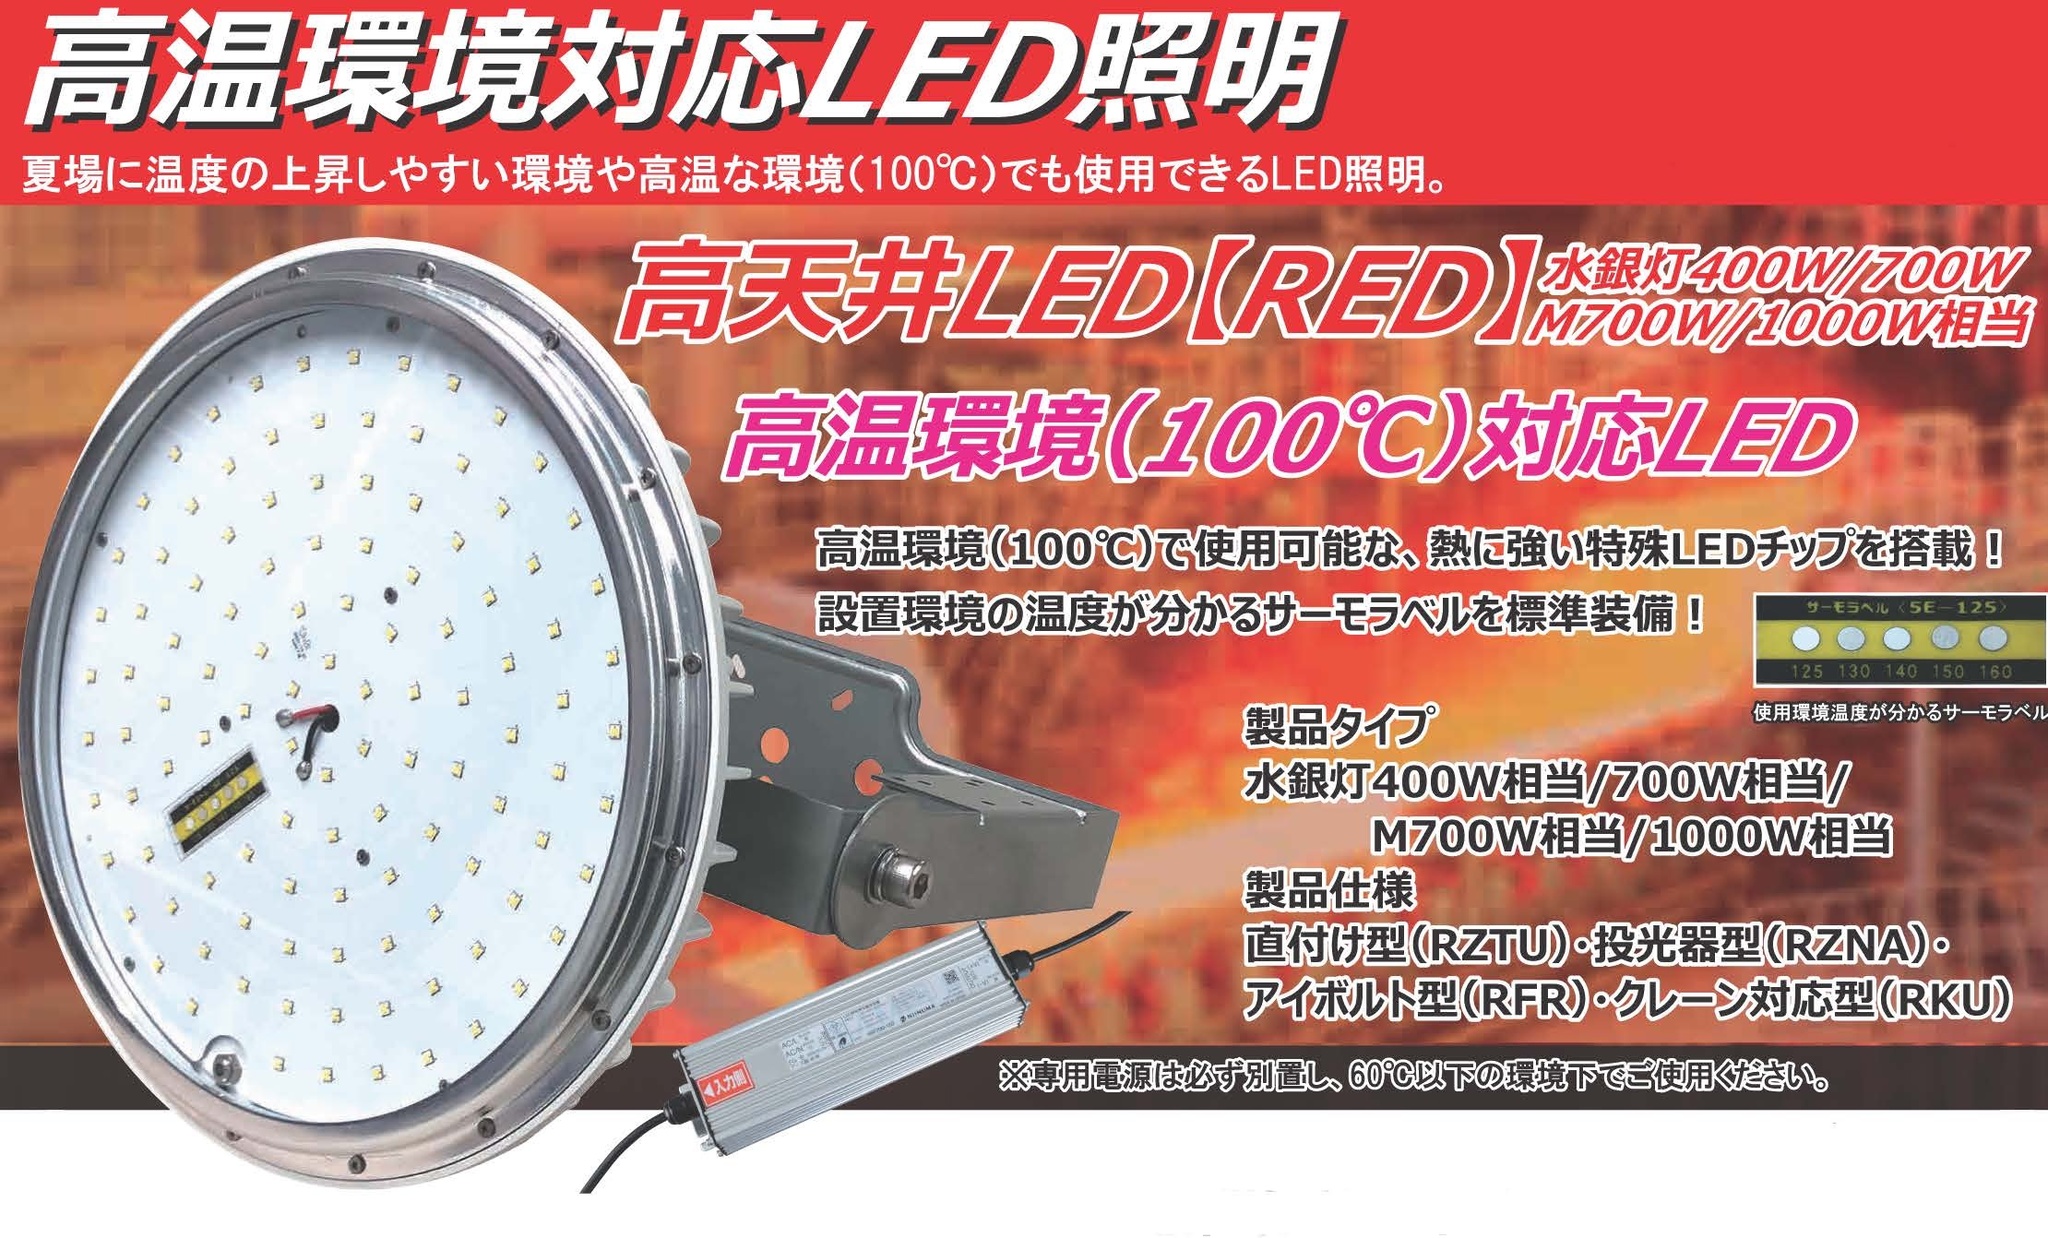 日本製の高温高熱環境で使用できるLED水銀灯。+100℃の高温,高熱に対応 